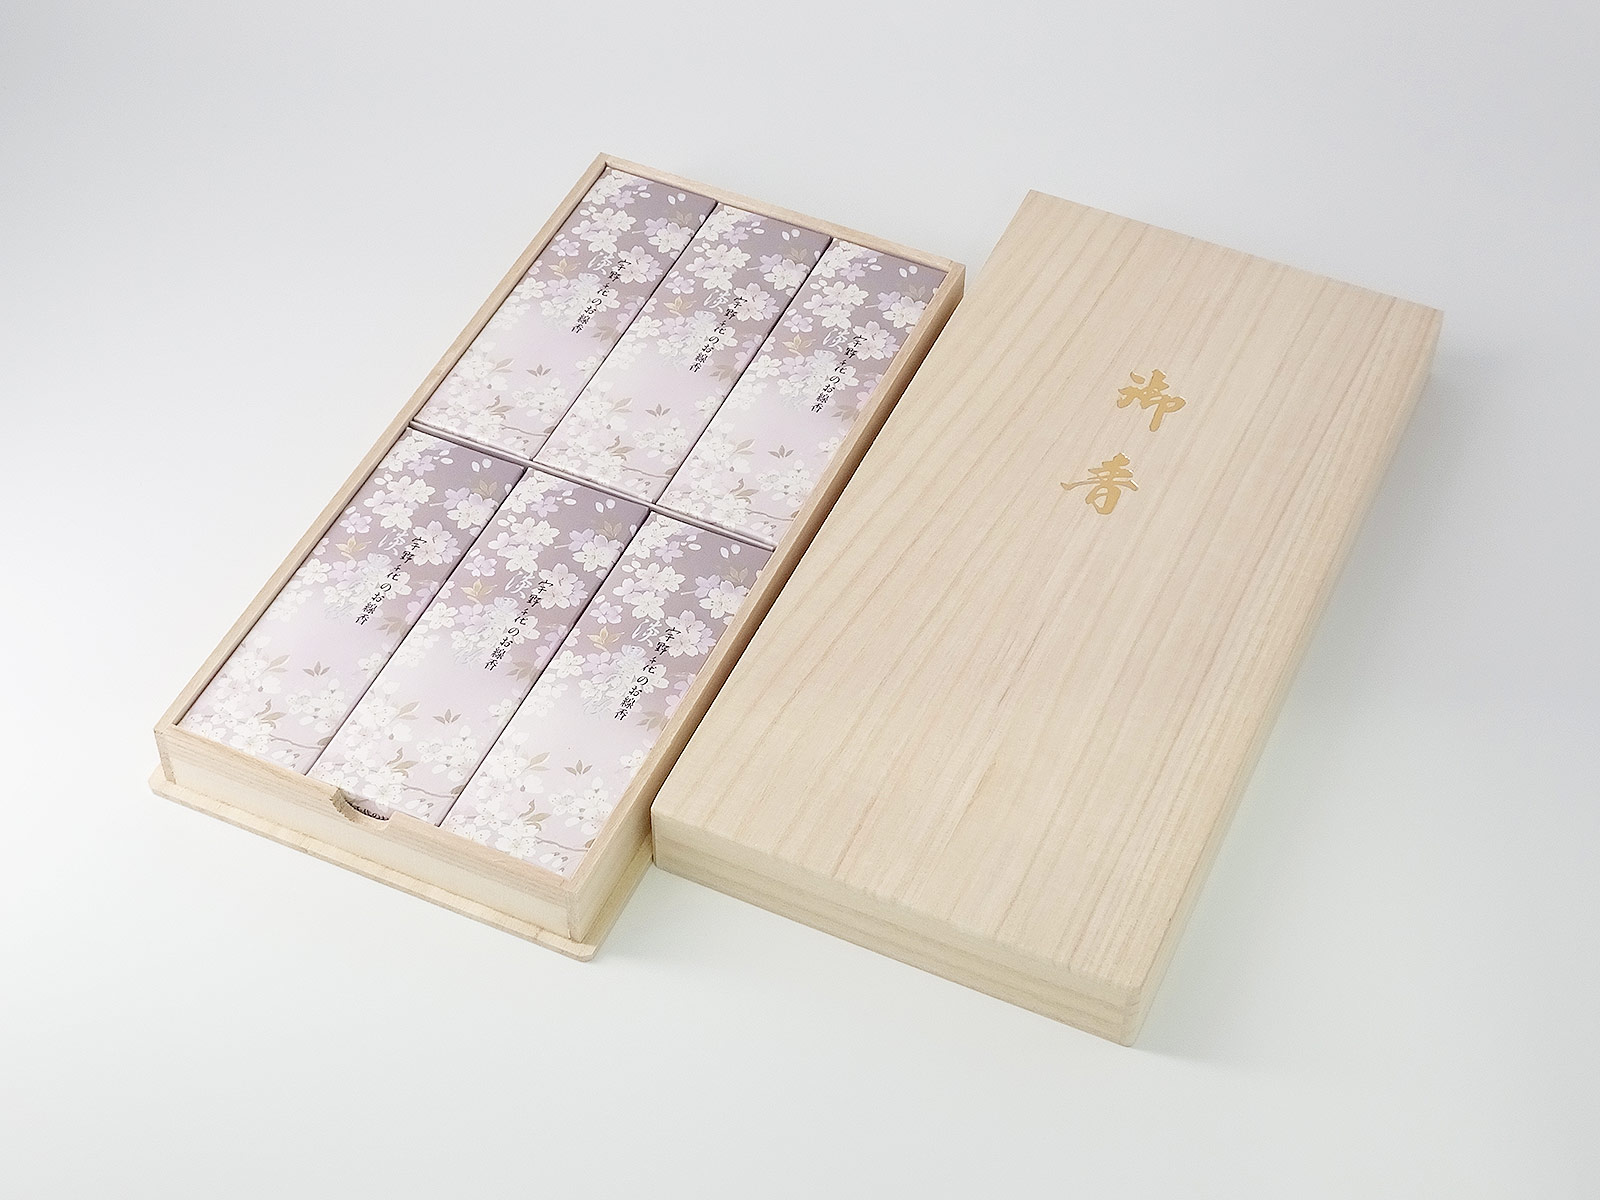 [ご進物 線香] 日本香堂 宇野千代のお線香 新・淡墨の桜 桐箱6箱入